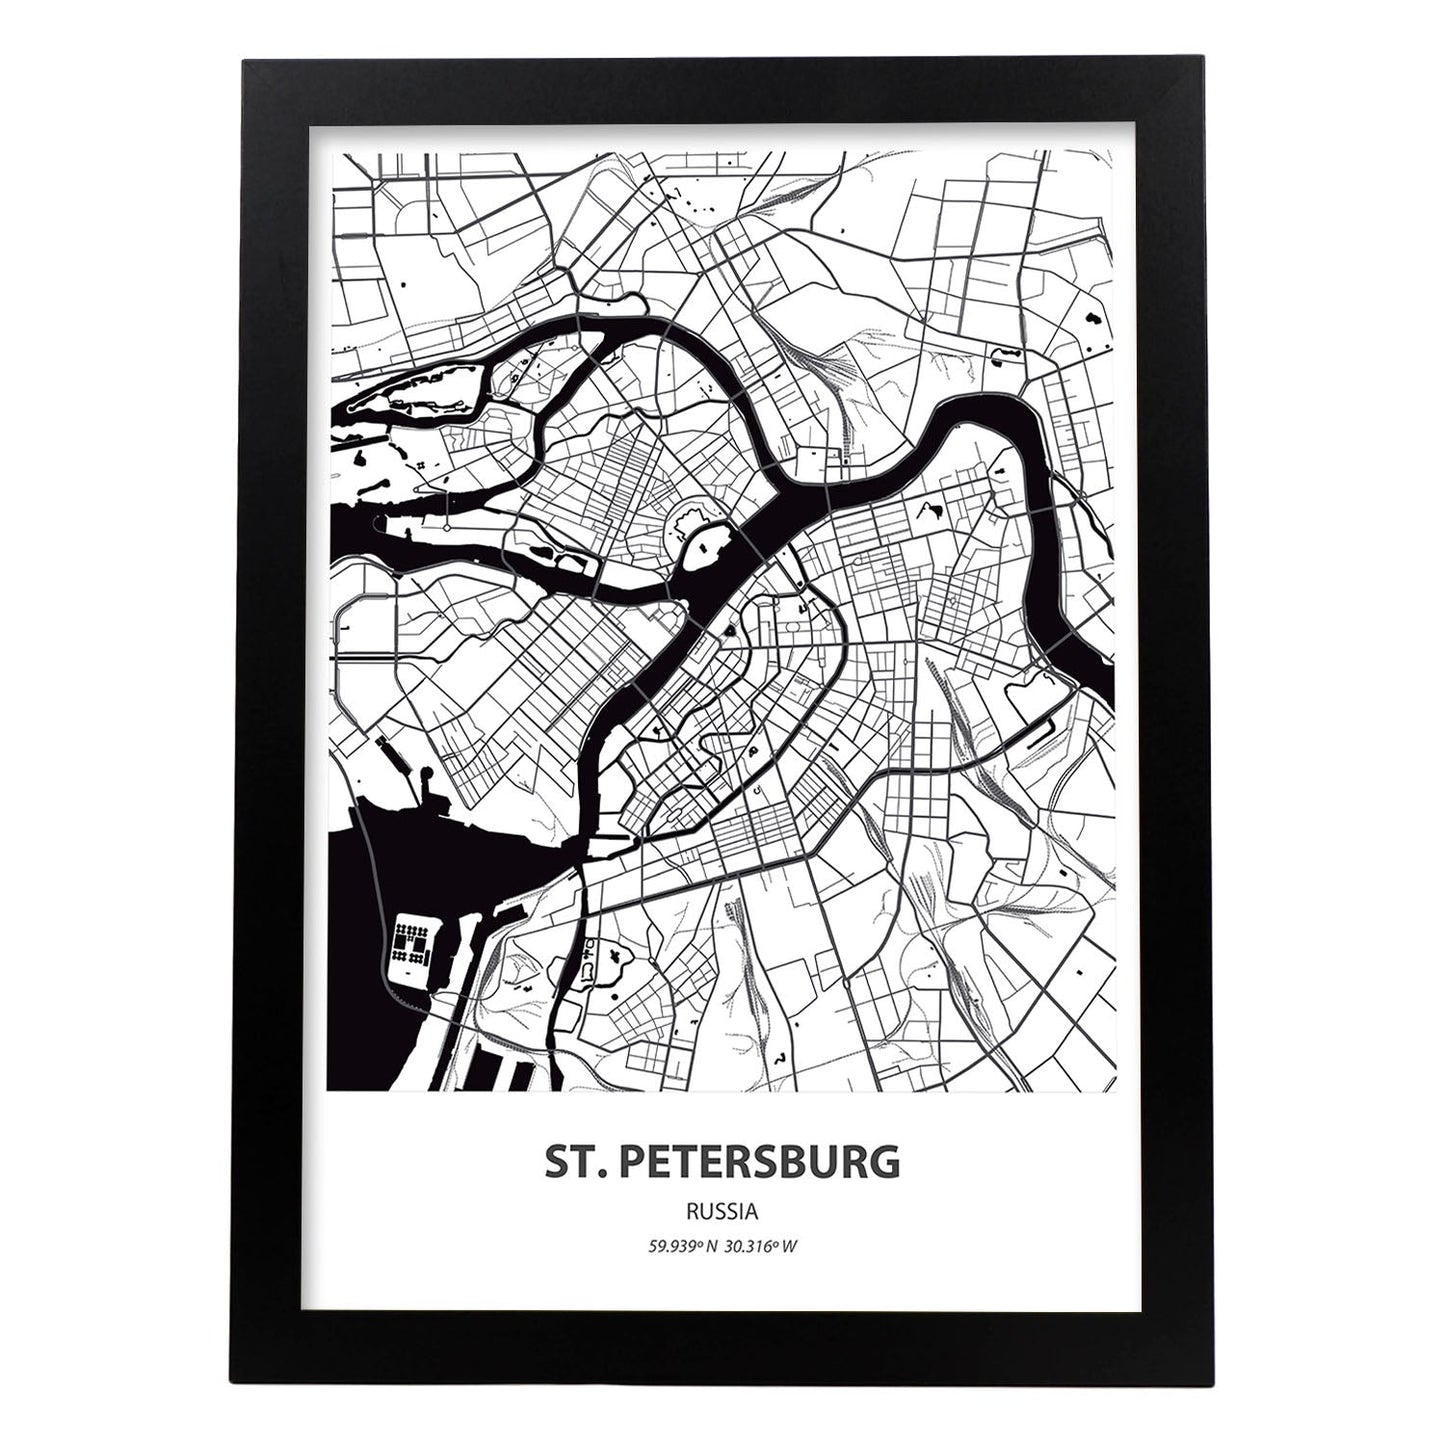 Poster con mapa de St. Petersburg - Rusia. Láminas de ciudades de Asia con mares y ríos en color negro.-Artwork-Nacnic-A3-Marco Negro-Nacnic Estudio SL